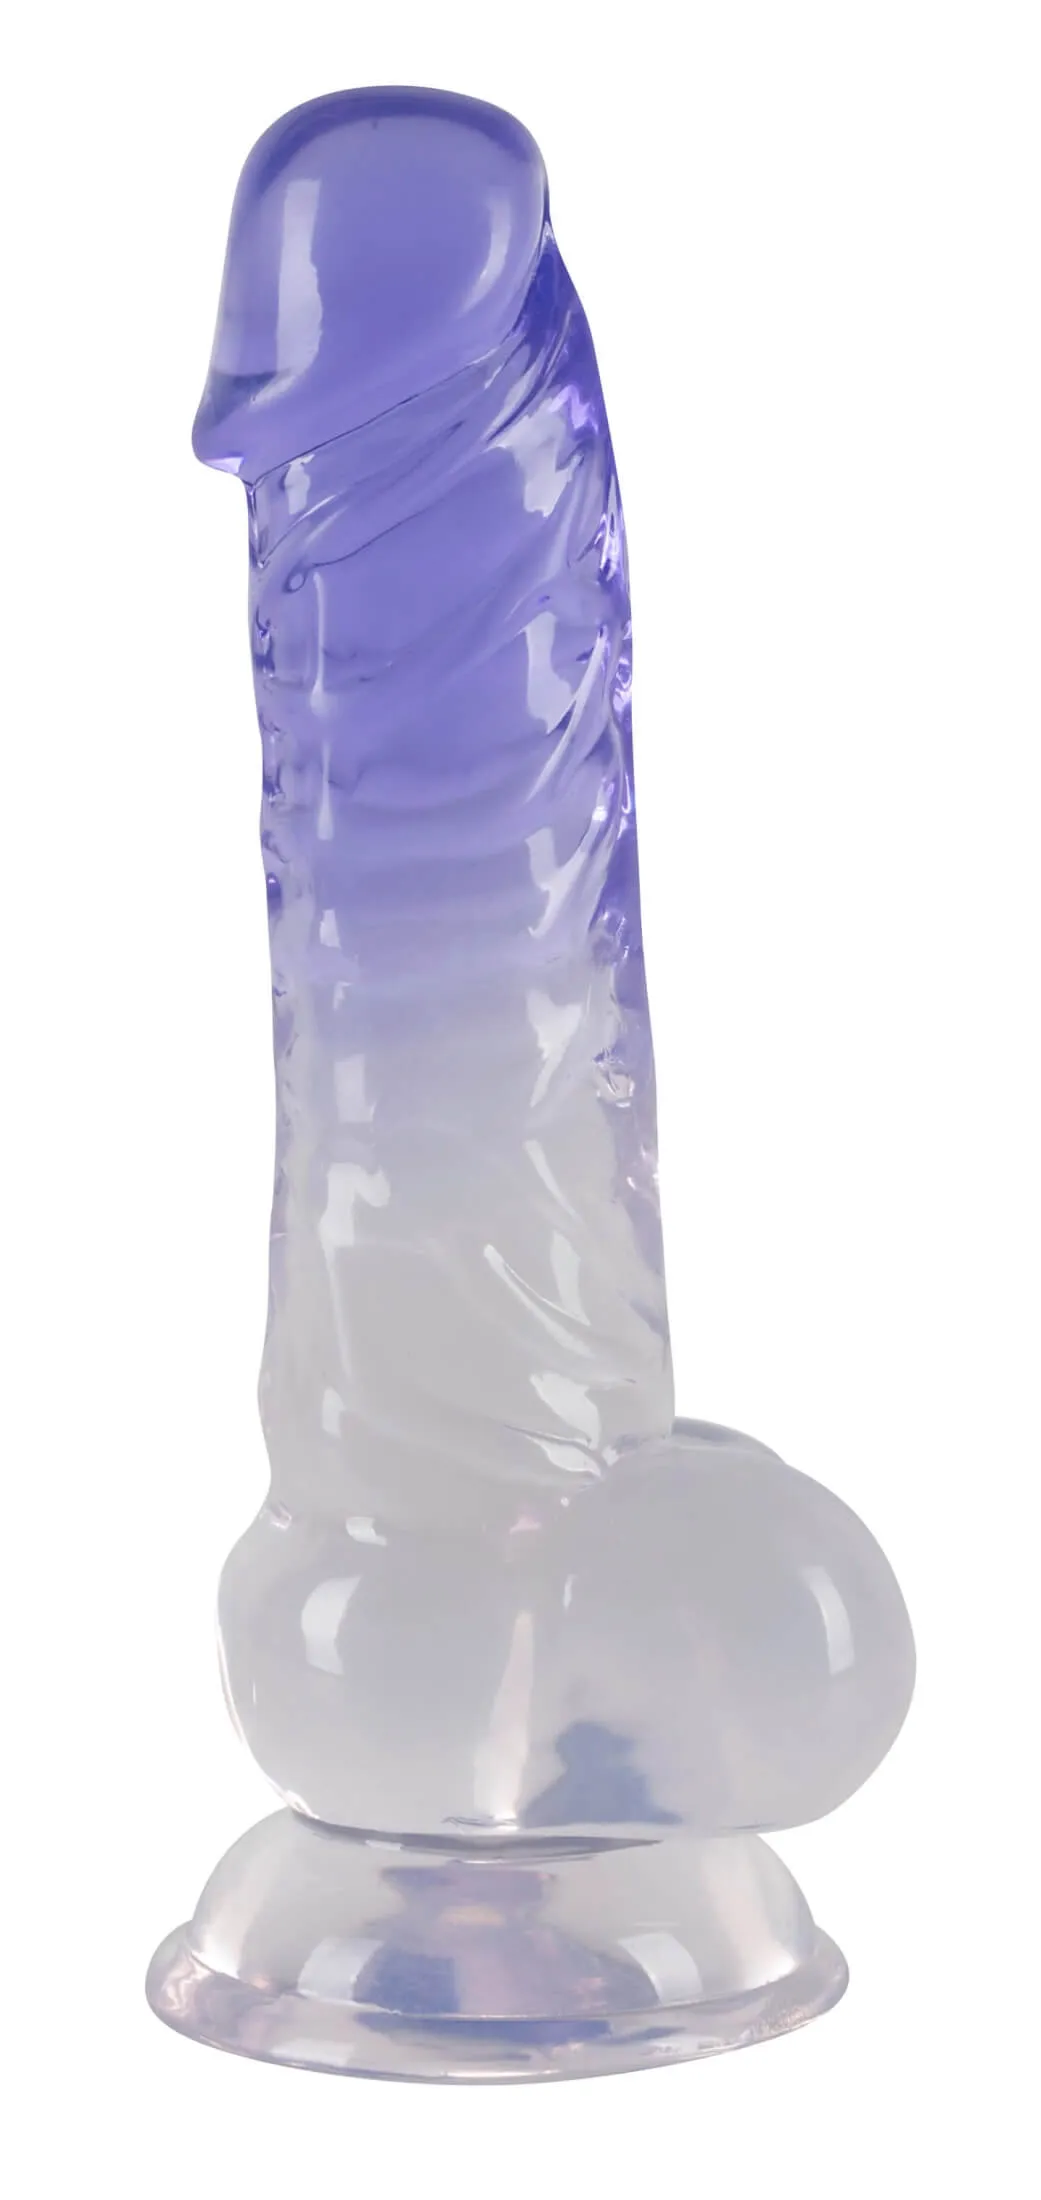 Levně Průsvitný fialový umělý penis, který vás se svými tvarovanými žaludy, varlaty a silnou přísavkou zve na skutečně pohádkové dobrodružství touhy!